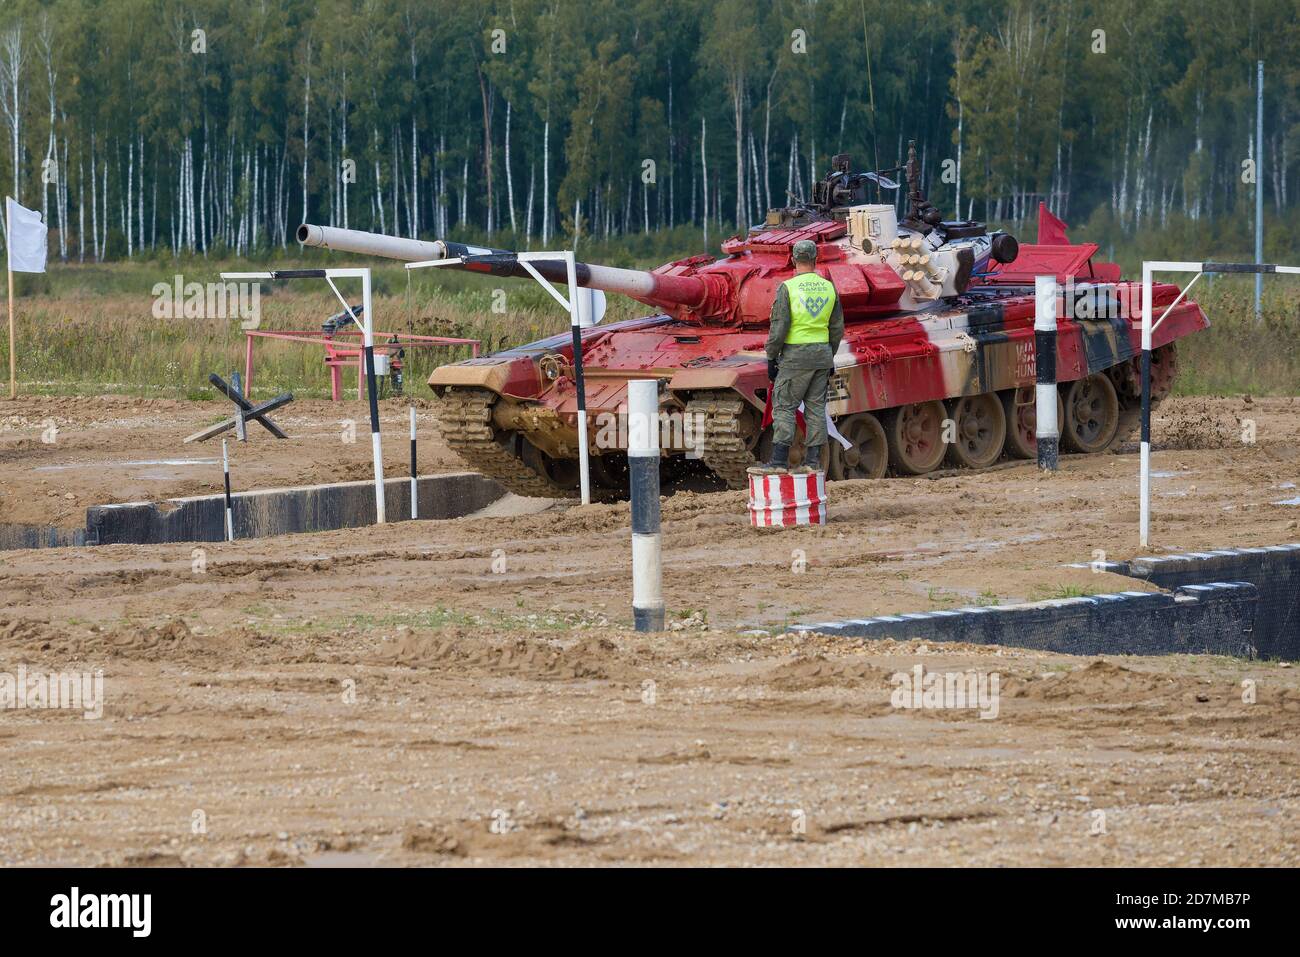 ALABINO, RUSSIE - 27 AOÛT 2020 : le char de l'équipe russe commence à surmonter l'obstacle de la « mère ». Fragment de biathlon de réservoir. Guerre internationale g Banque D'Images